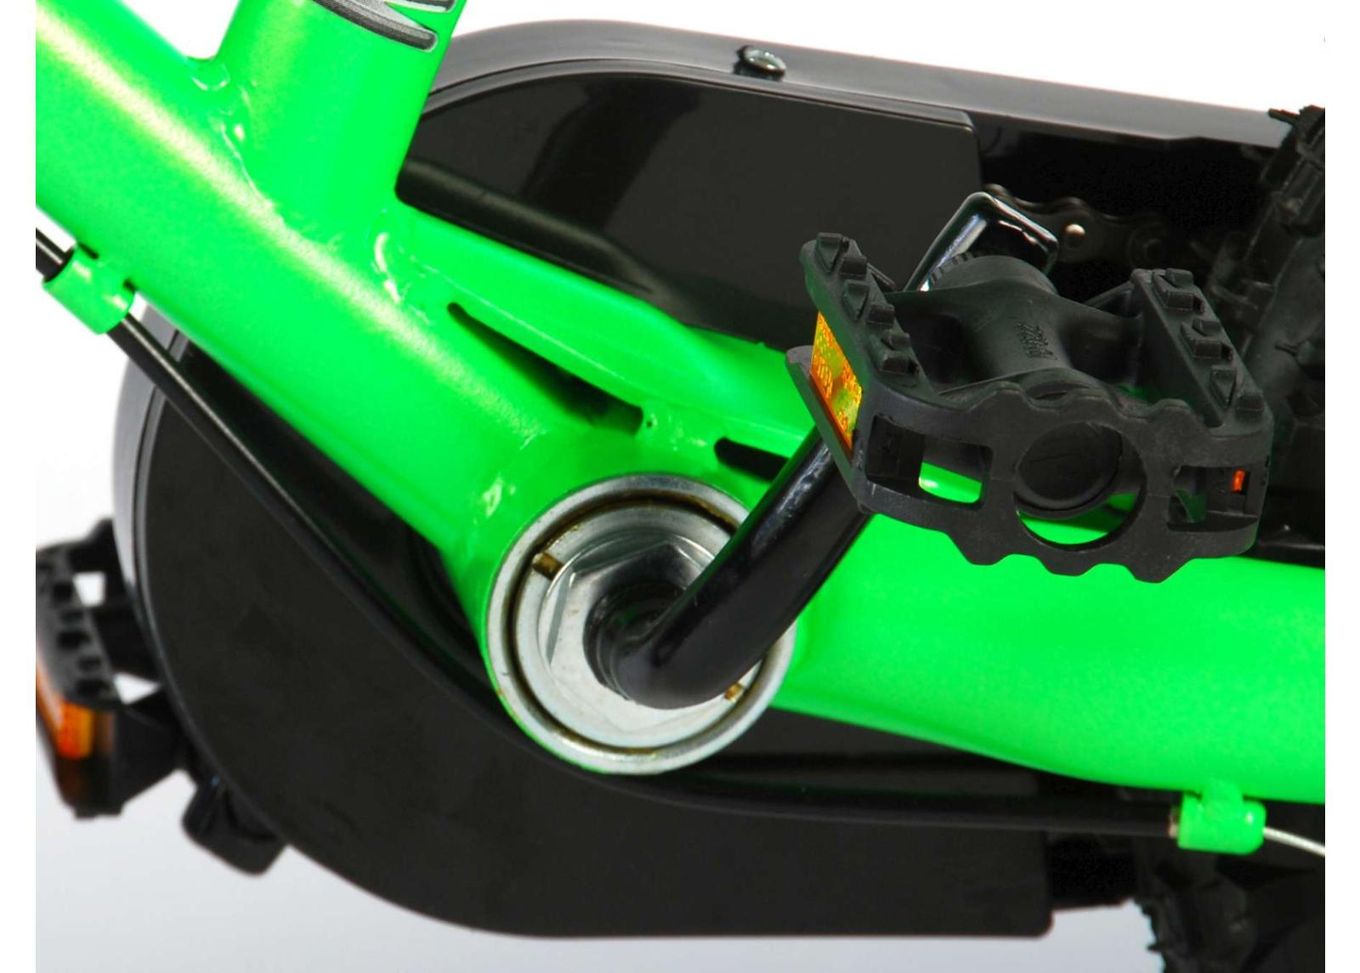 Детский велосипед Motobike Green 12 дюймов Volare увеличить